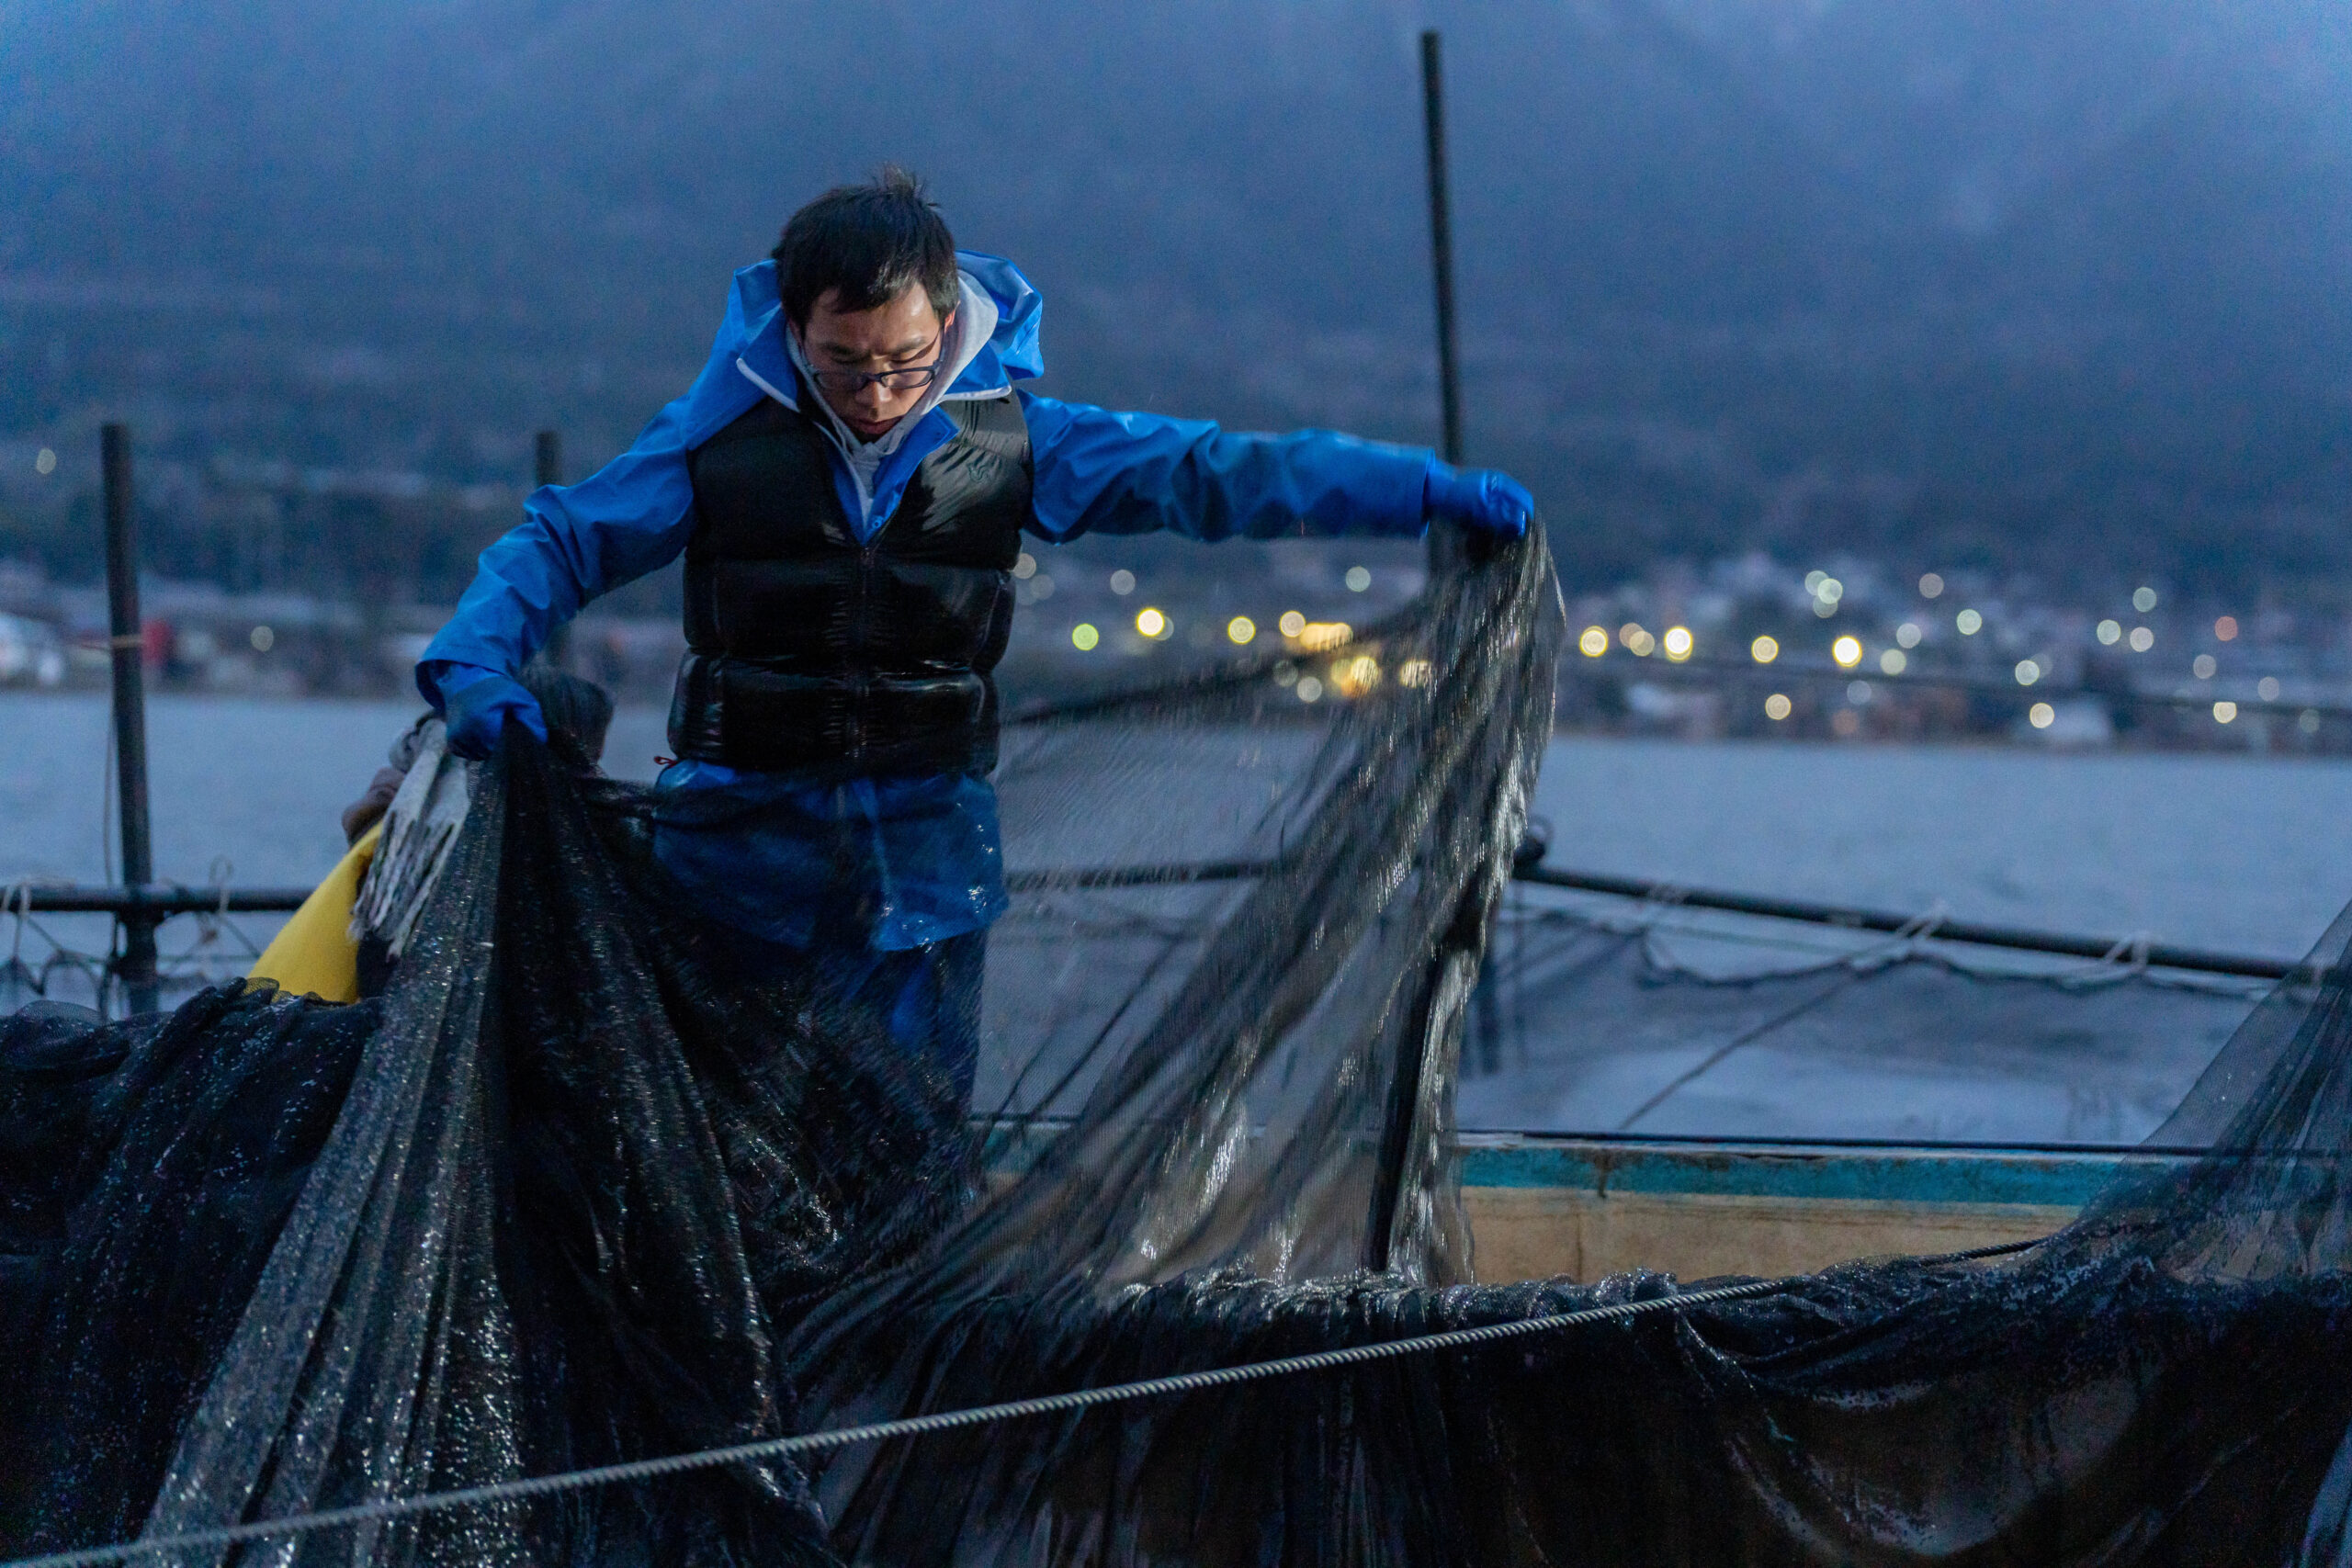 漁師として琵琶湖と共に生きる。1000年以上の伝統漁業「えり漁」をするフィッシャーアーキテクトが描く未来